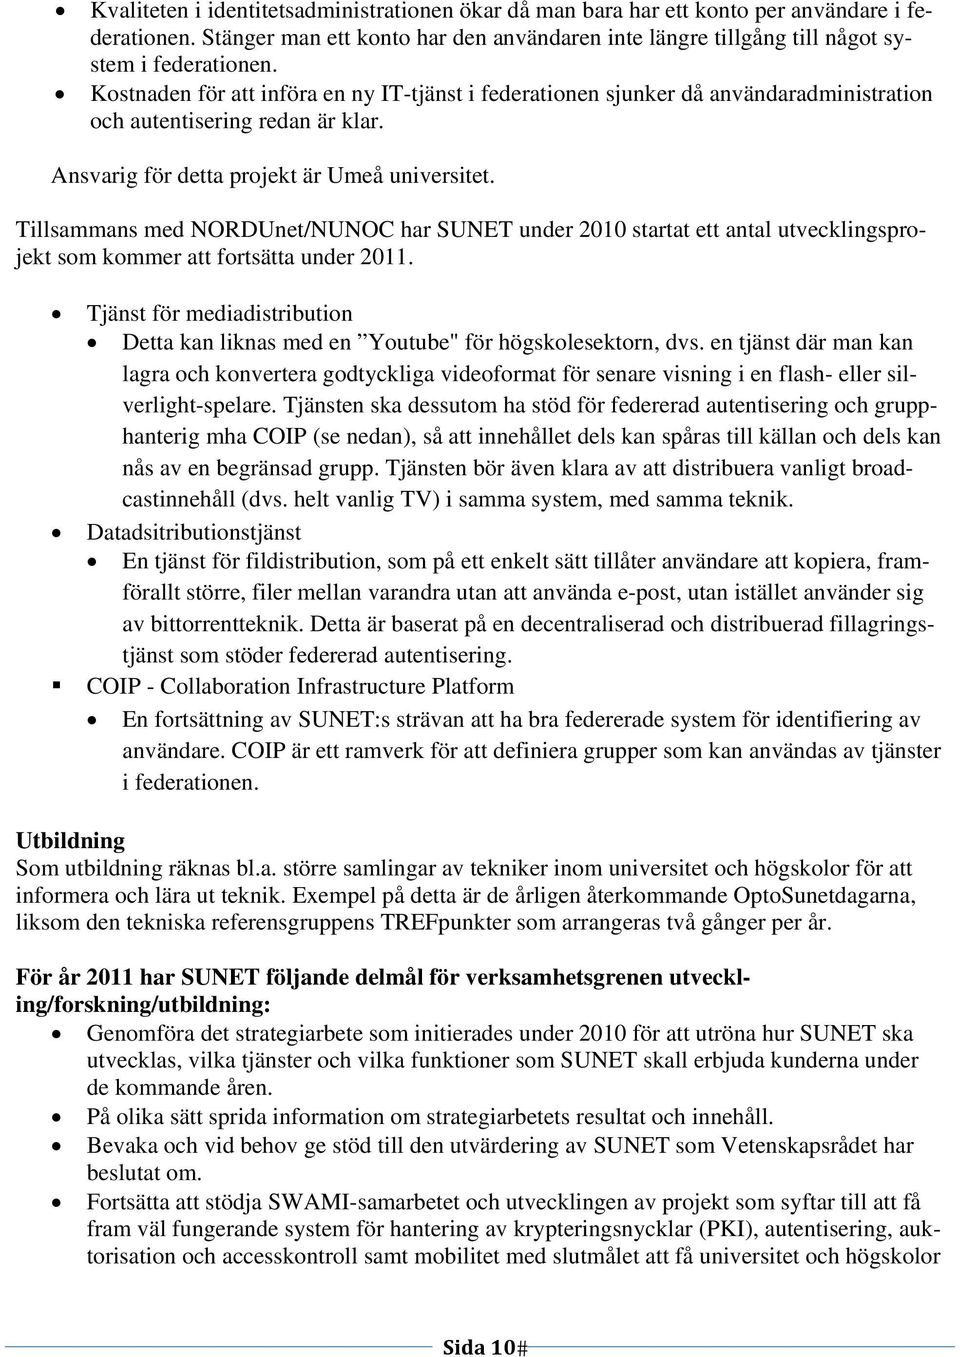 Tillsammans med NORDUnet/NUNOC har SUNET under 2010 startat ett antal utvecklingsprojekt som kommer att fortsätta under 2011.